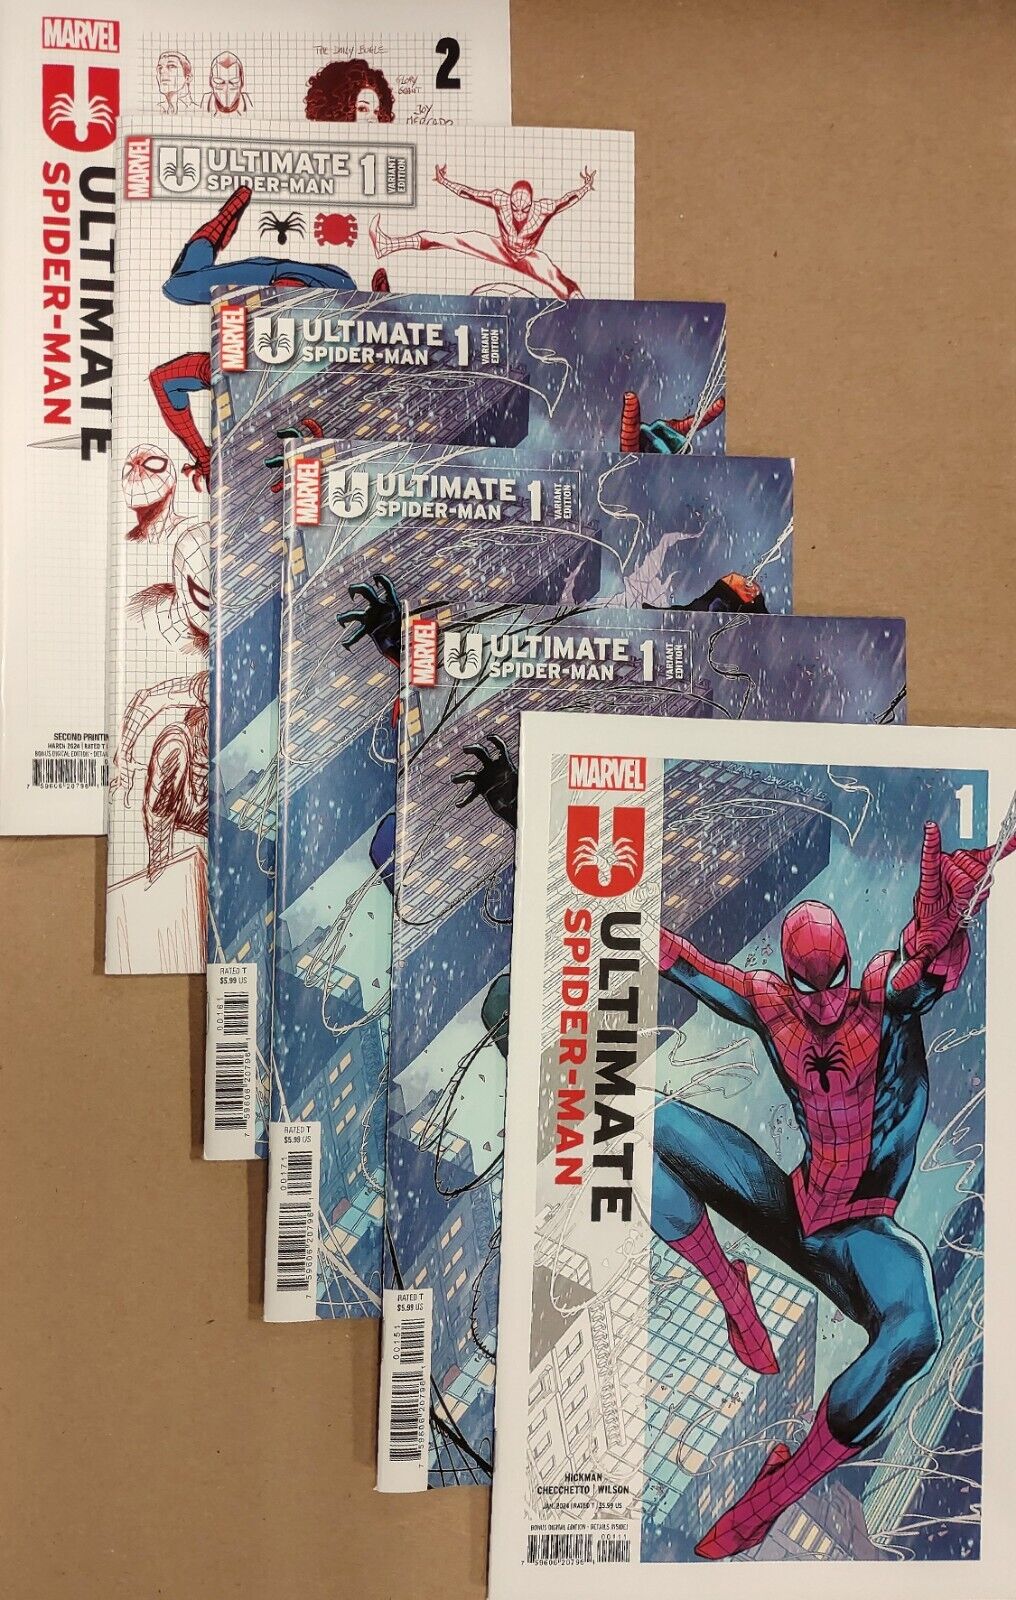 Ultimate Spider-Man #1 BUNDLE ALL CHECCHETTO COVERS #1 + #2 SYMBIOTE 